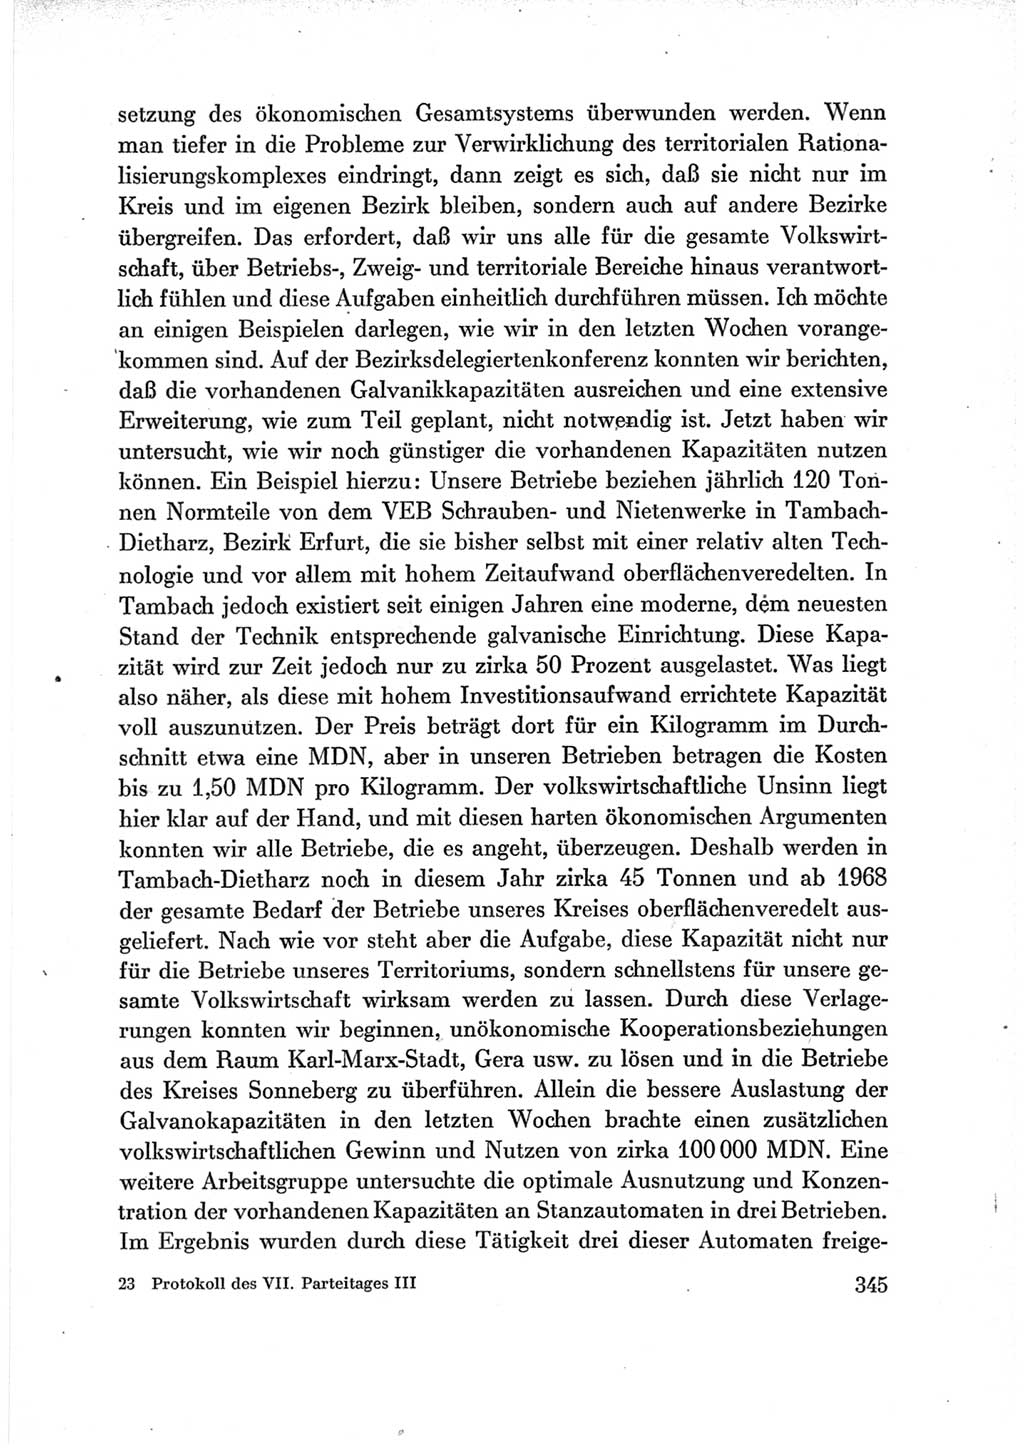 Protokoll der Verhandlungen des Ⅶ. Parteitages der Sozialistischen Einheitspartei Deutschlands (SED) [Deutsche Demokratische Republik (DDR)] 1967, Band Ⅲ, Seite 345 (Prot. Verh. Ⅶ. PT SED DDR 1967, Bd. Ⅲ, S. 345)